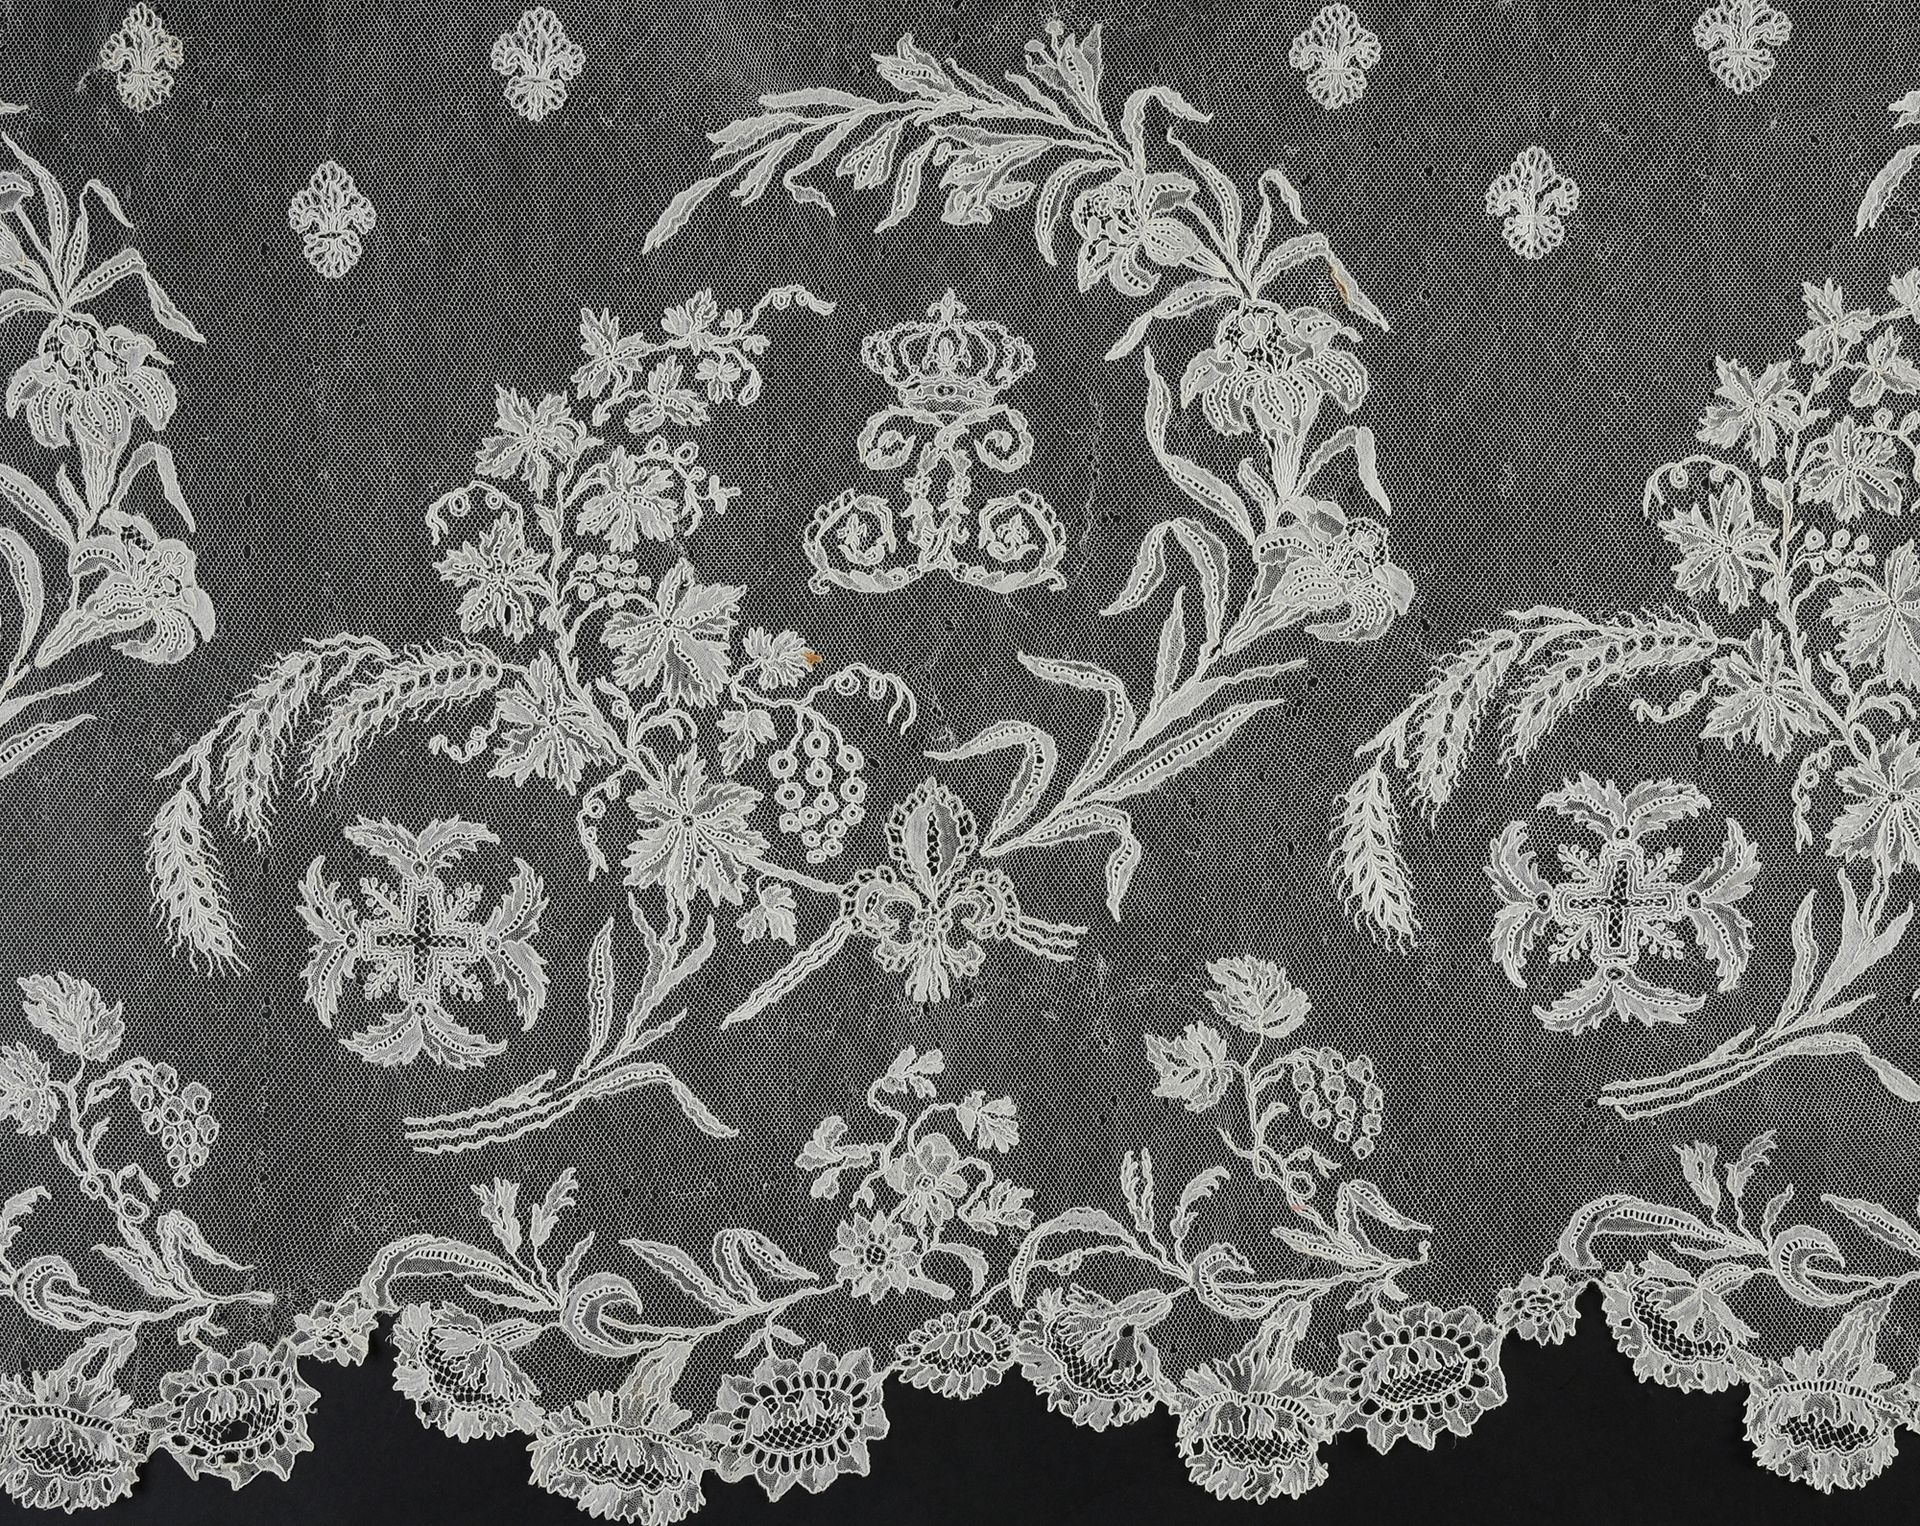 Null 罕见的带有查理十世形象的大型围巾，针和纱锭，布鲁塞尔，约1824-1830年。
混合花边，一些图案是用纱锭做的，另一些是用非常精细的针刺，并应用在一个&hellip;